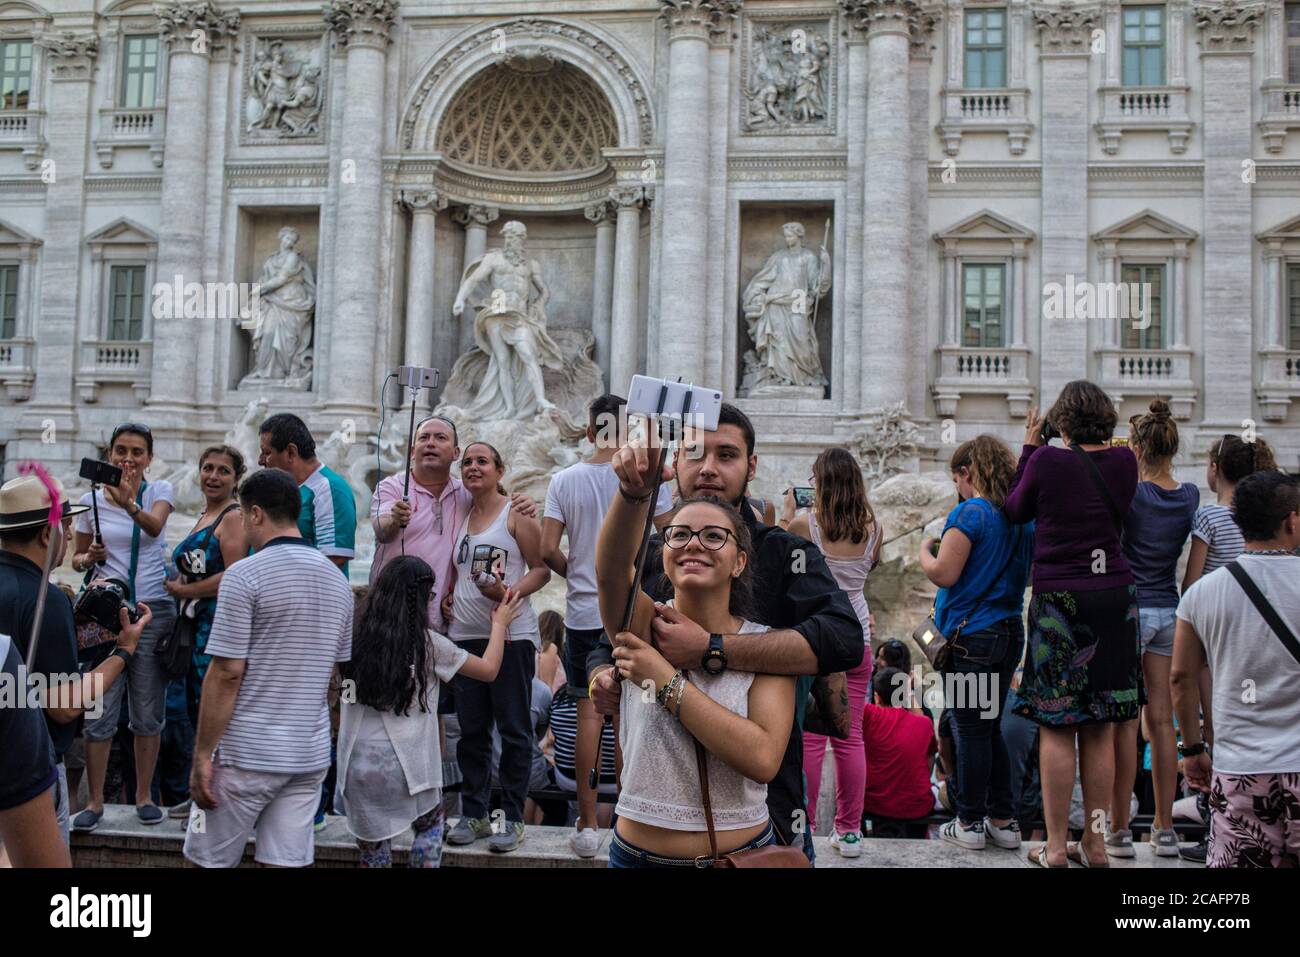 Europa - Italia, capital Roma: Turista tomando un selfie en la Fontana de Trevi que es uno de los lugares más populares de Roma, miles de personas Foto de stock